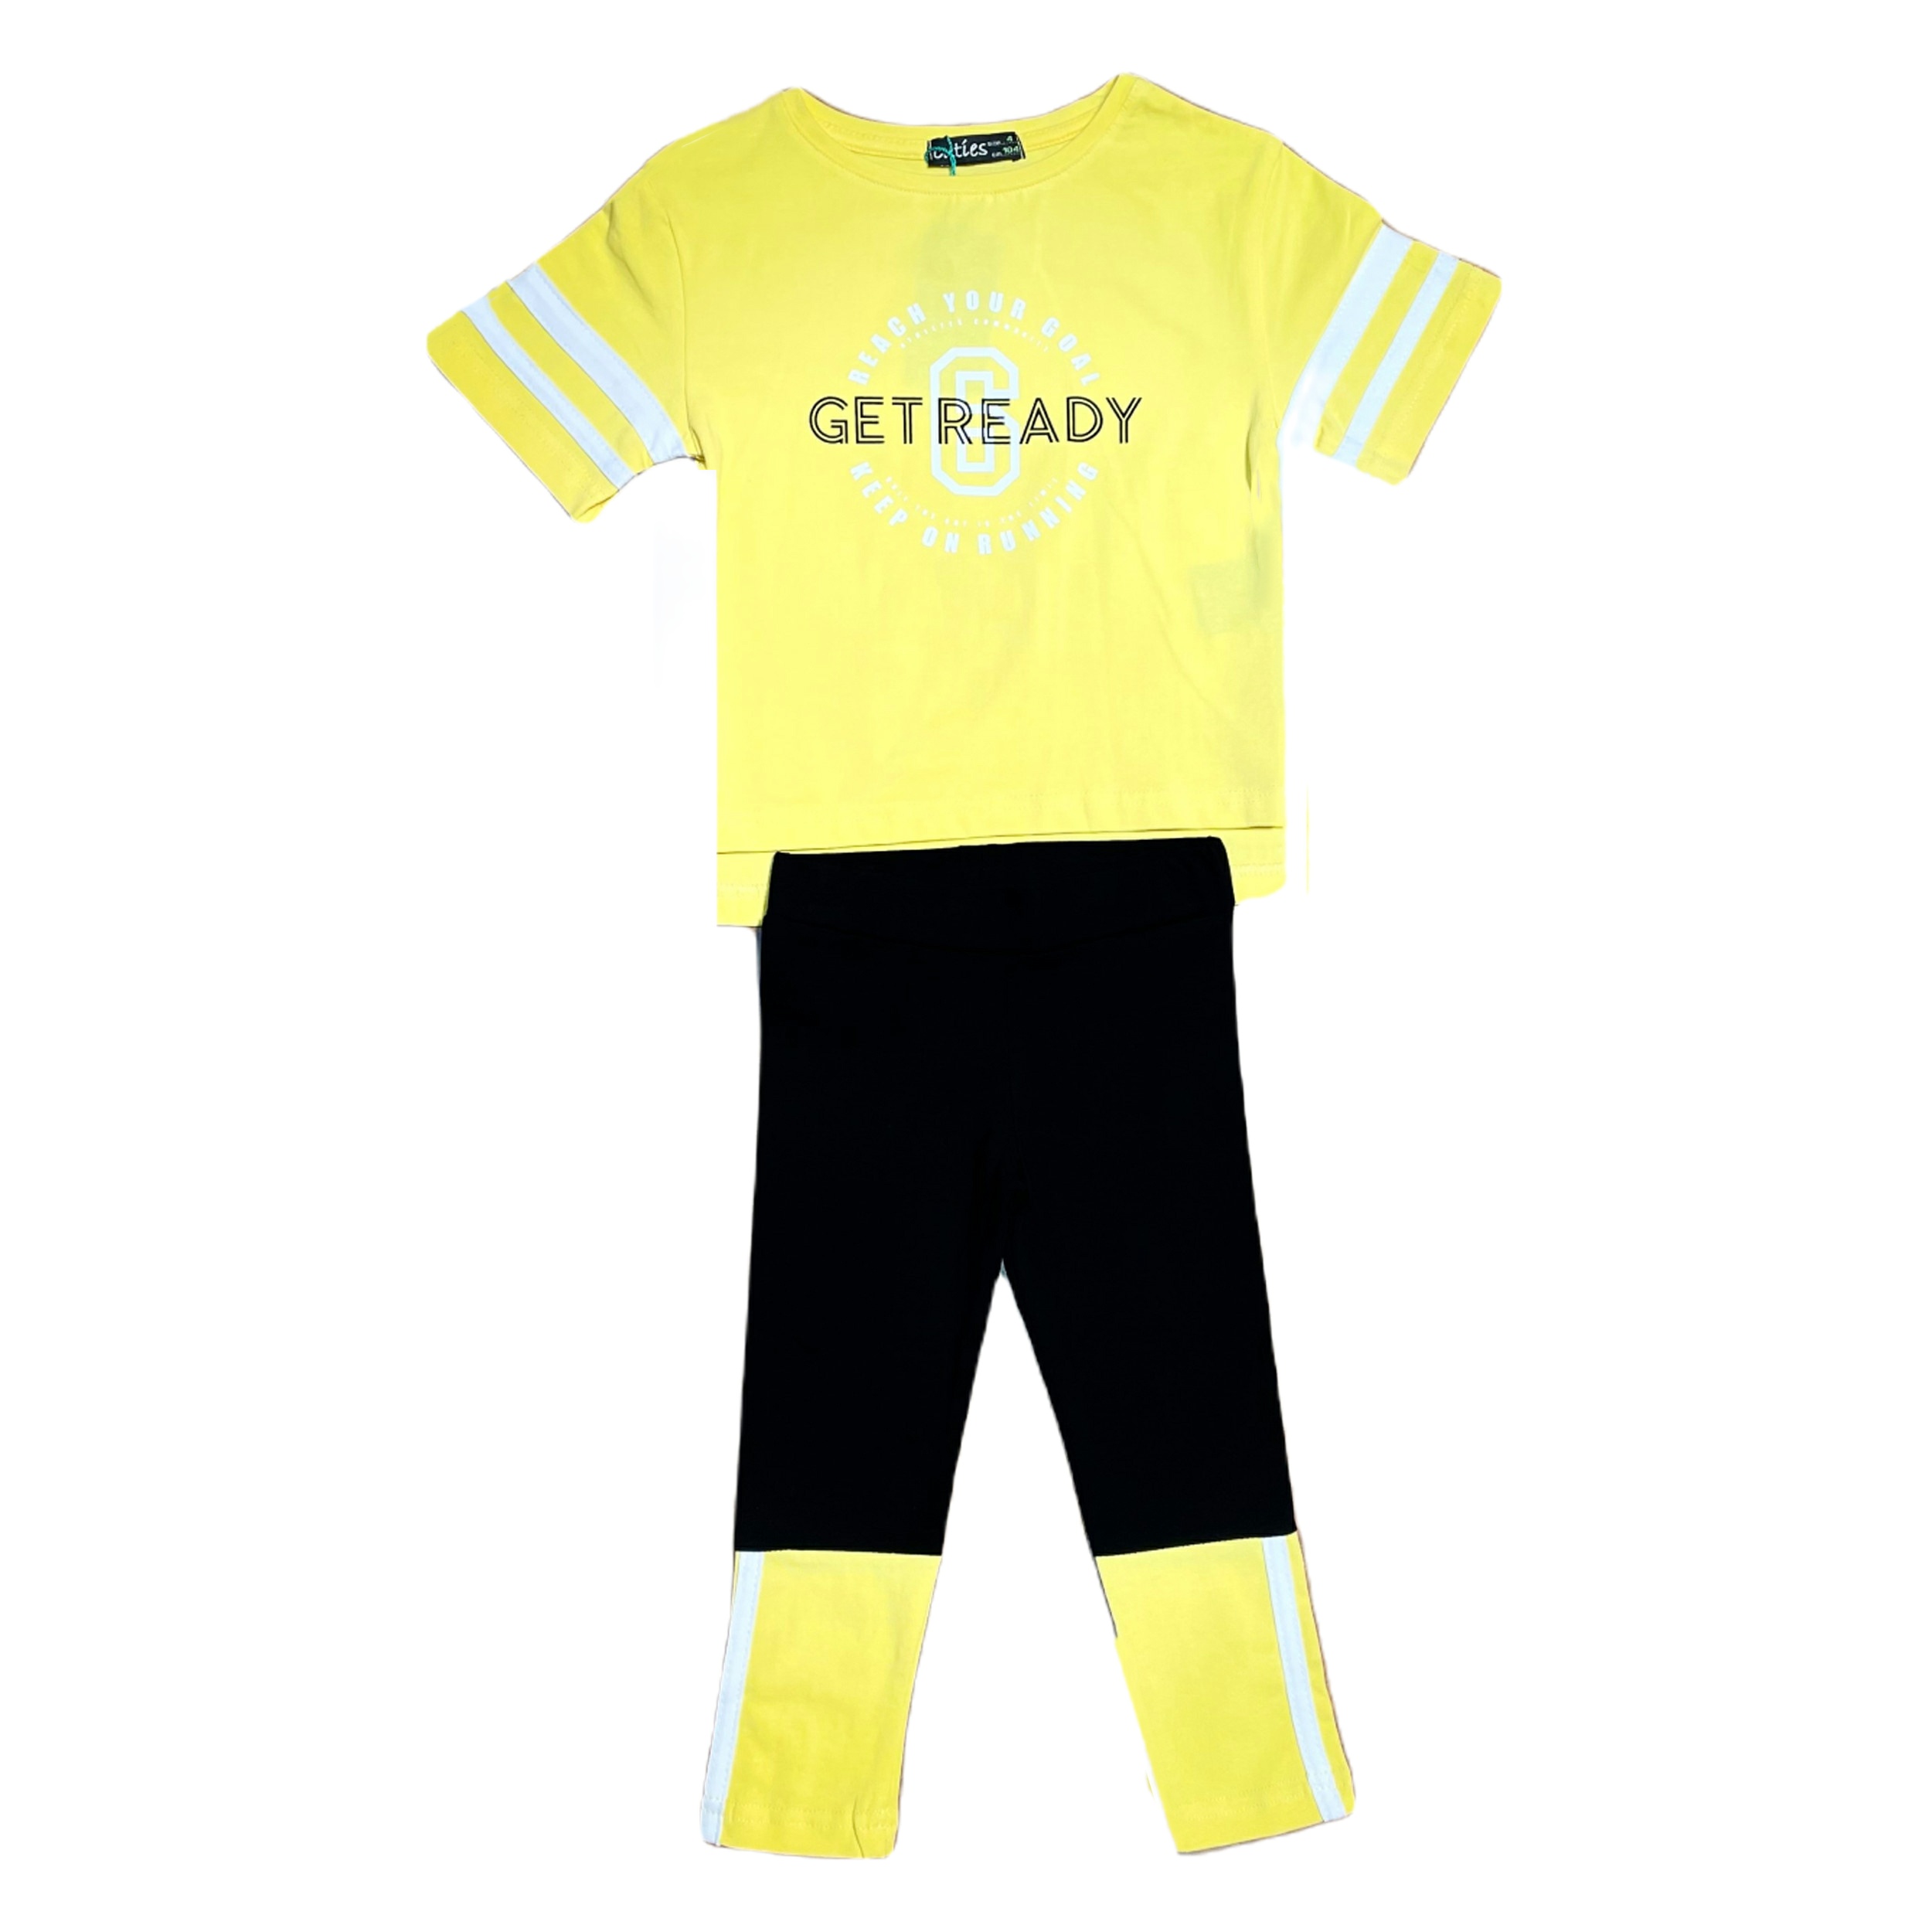 ست تی شرت و لگینگ ورزشی  مدل get ready رنگ زرد